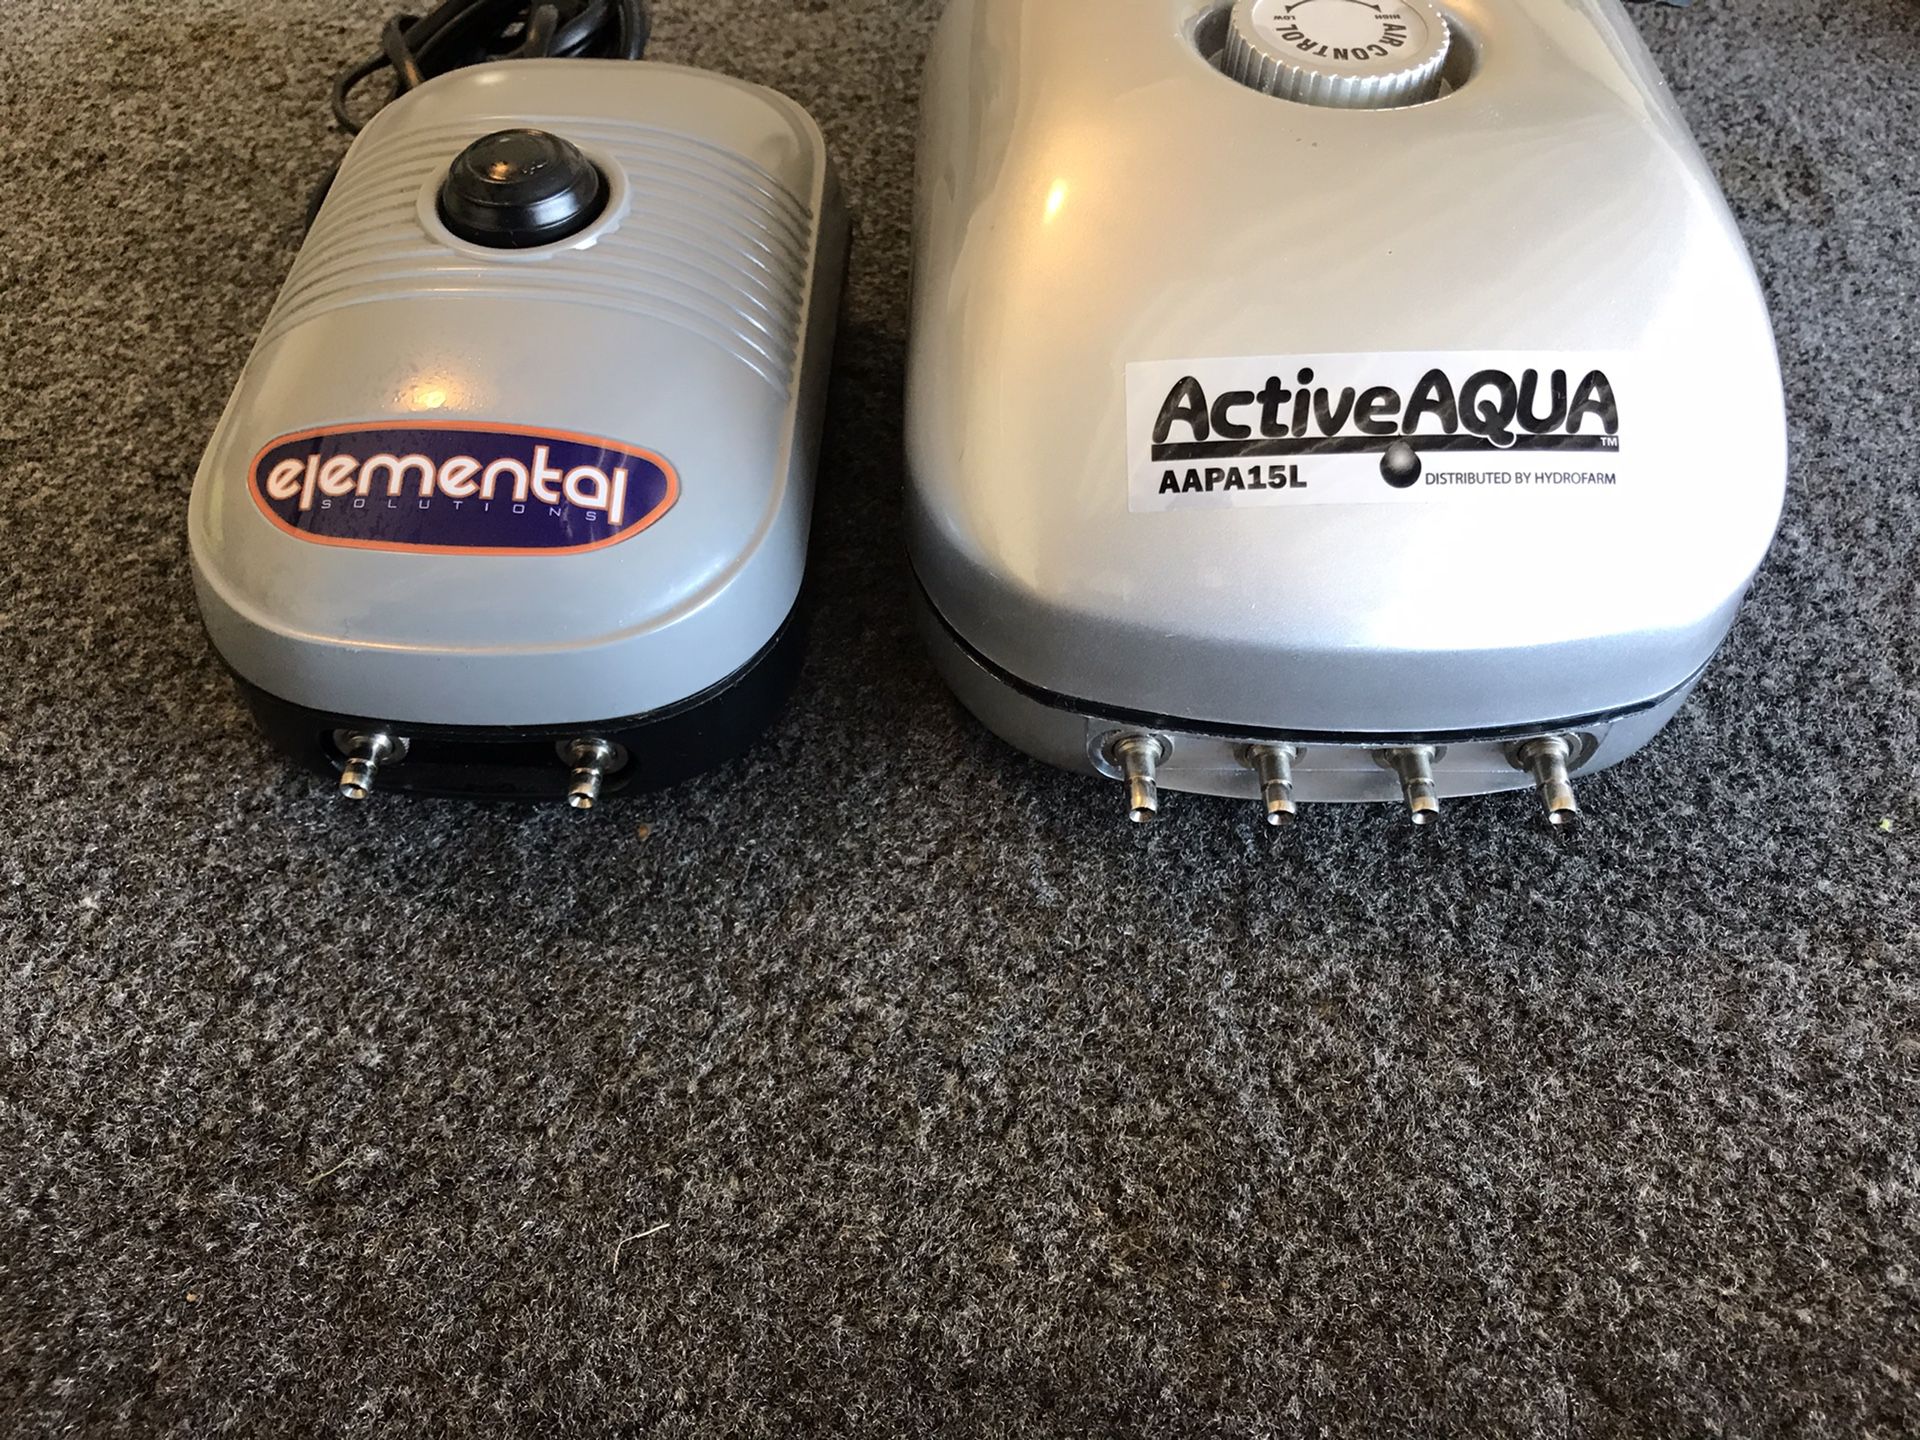 Active Aqua and Elemental (Air Pumps)